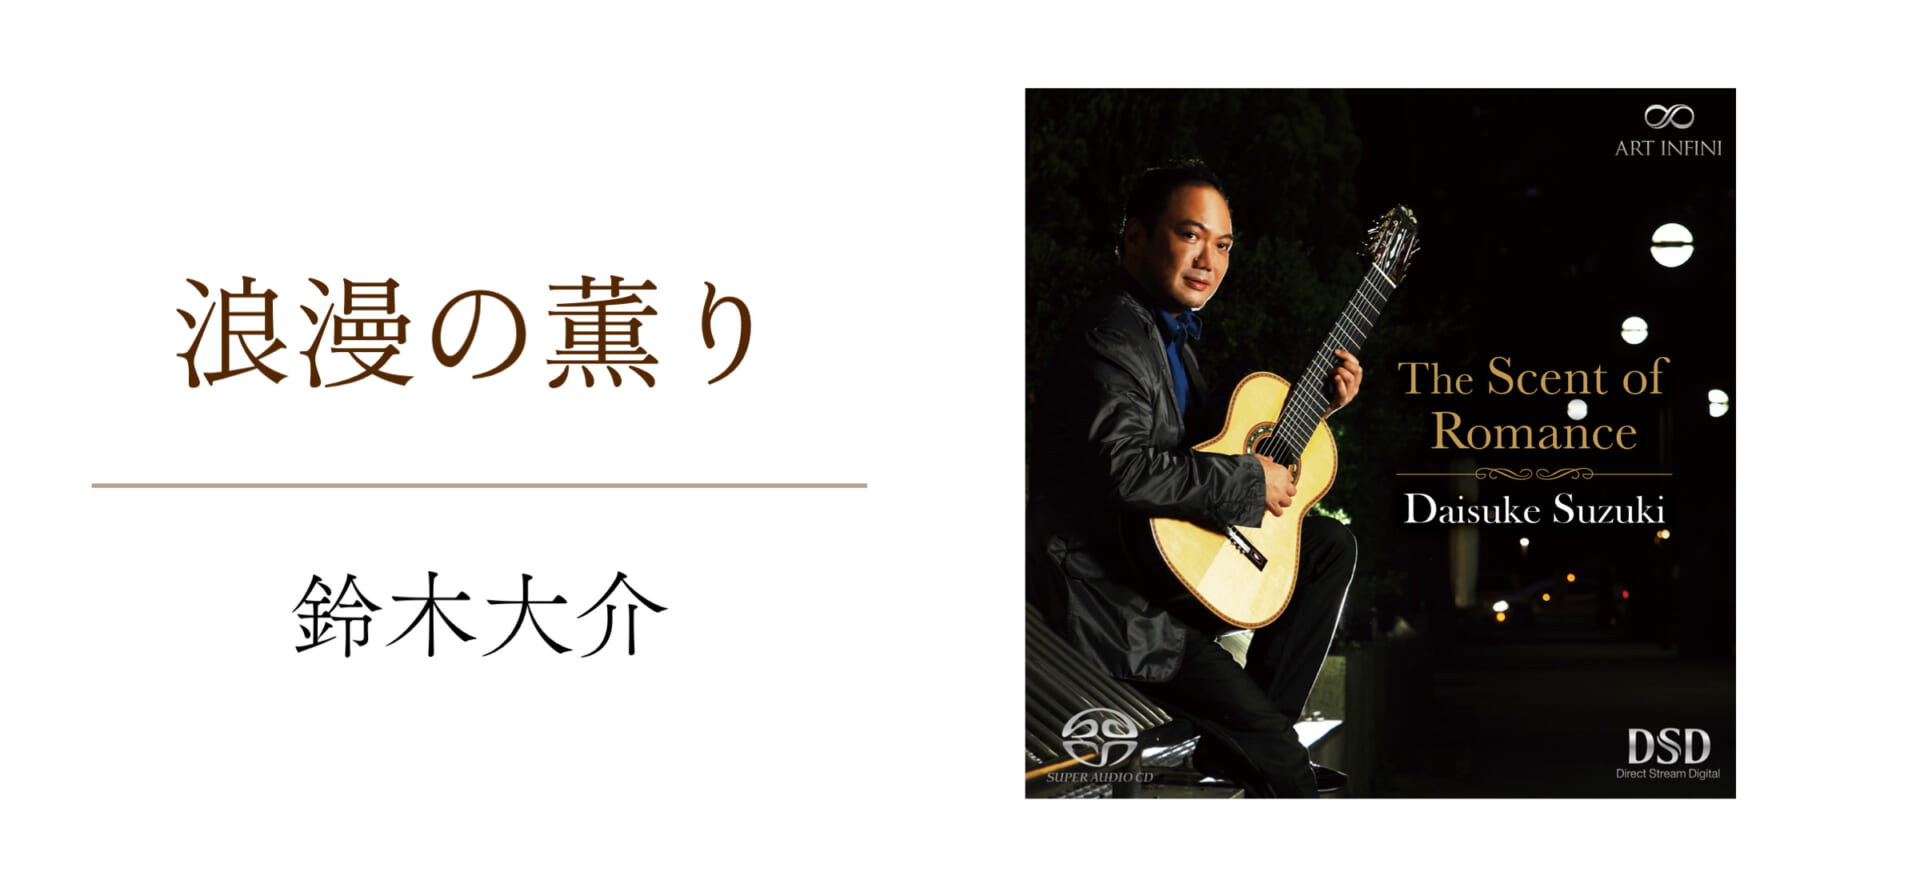 クラシック・ギタリストの鈴木大介、ロマン派の曲を8弦ギターで奏でた作品をリリース